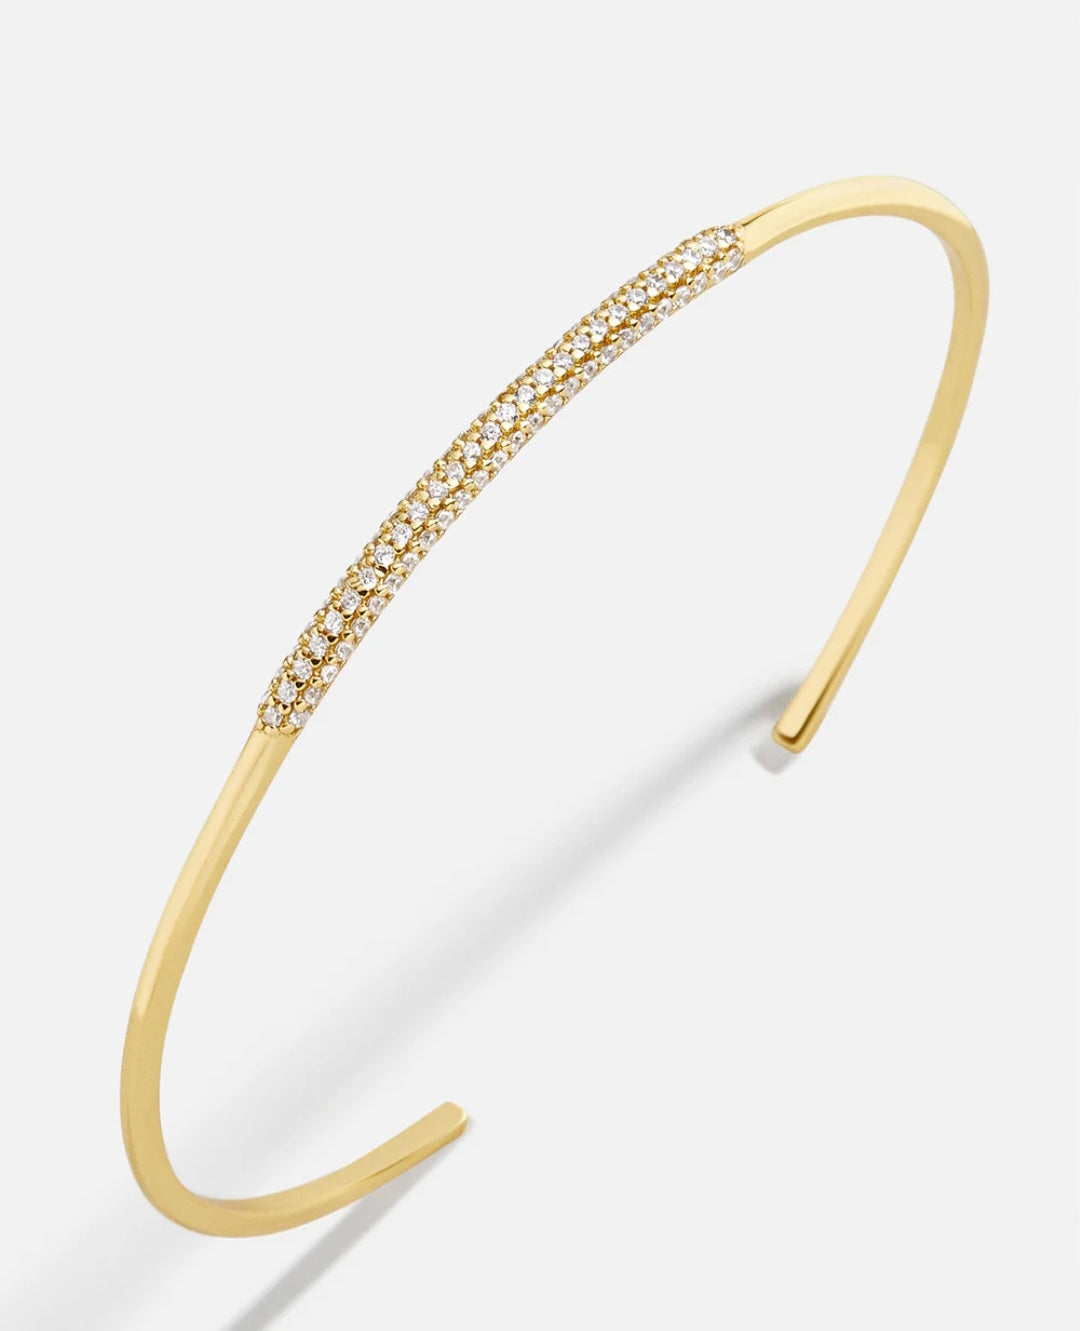 Violetta 18K Gold Cuff Bracelet